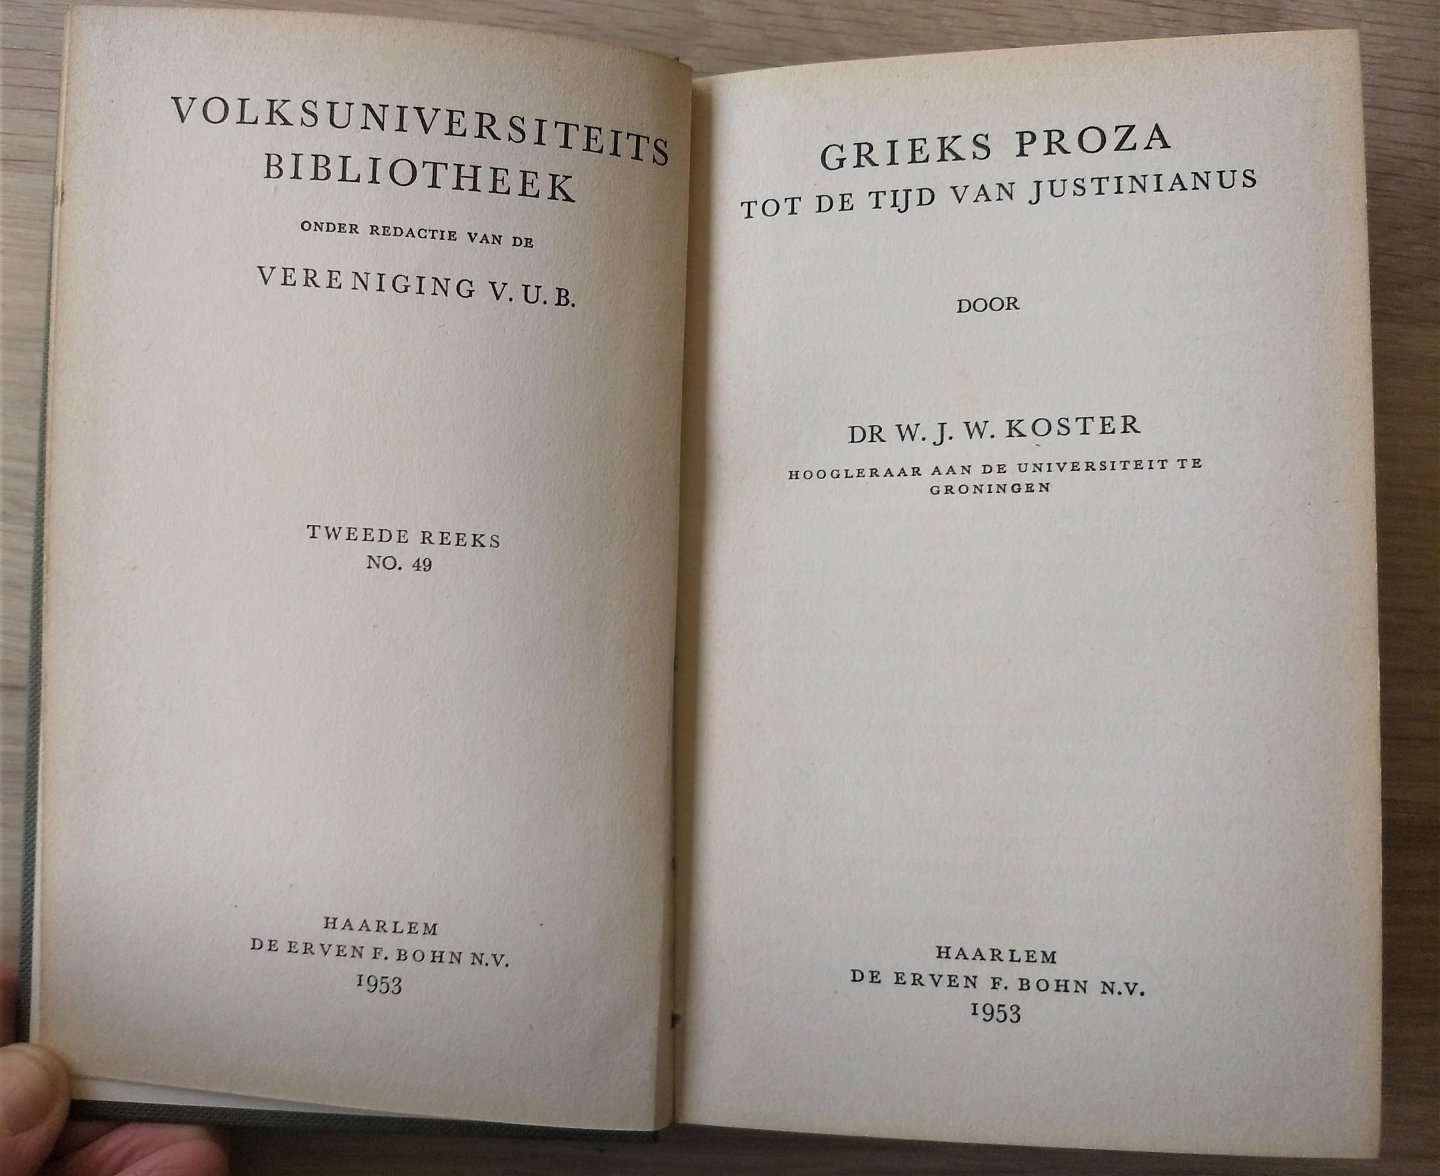 Koster Dr. W.J.W. Hooglerr aan de universiteit te Groningen - GRIEKS PROZA TOT DE TIJD VAN JUSTINIANUS - tweede reeks no. 49